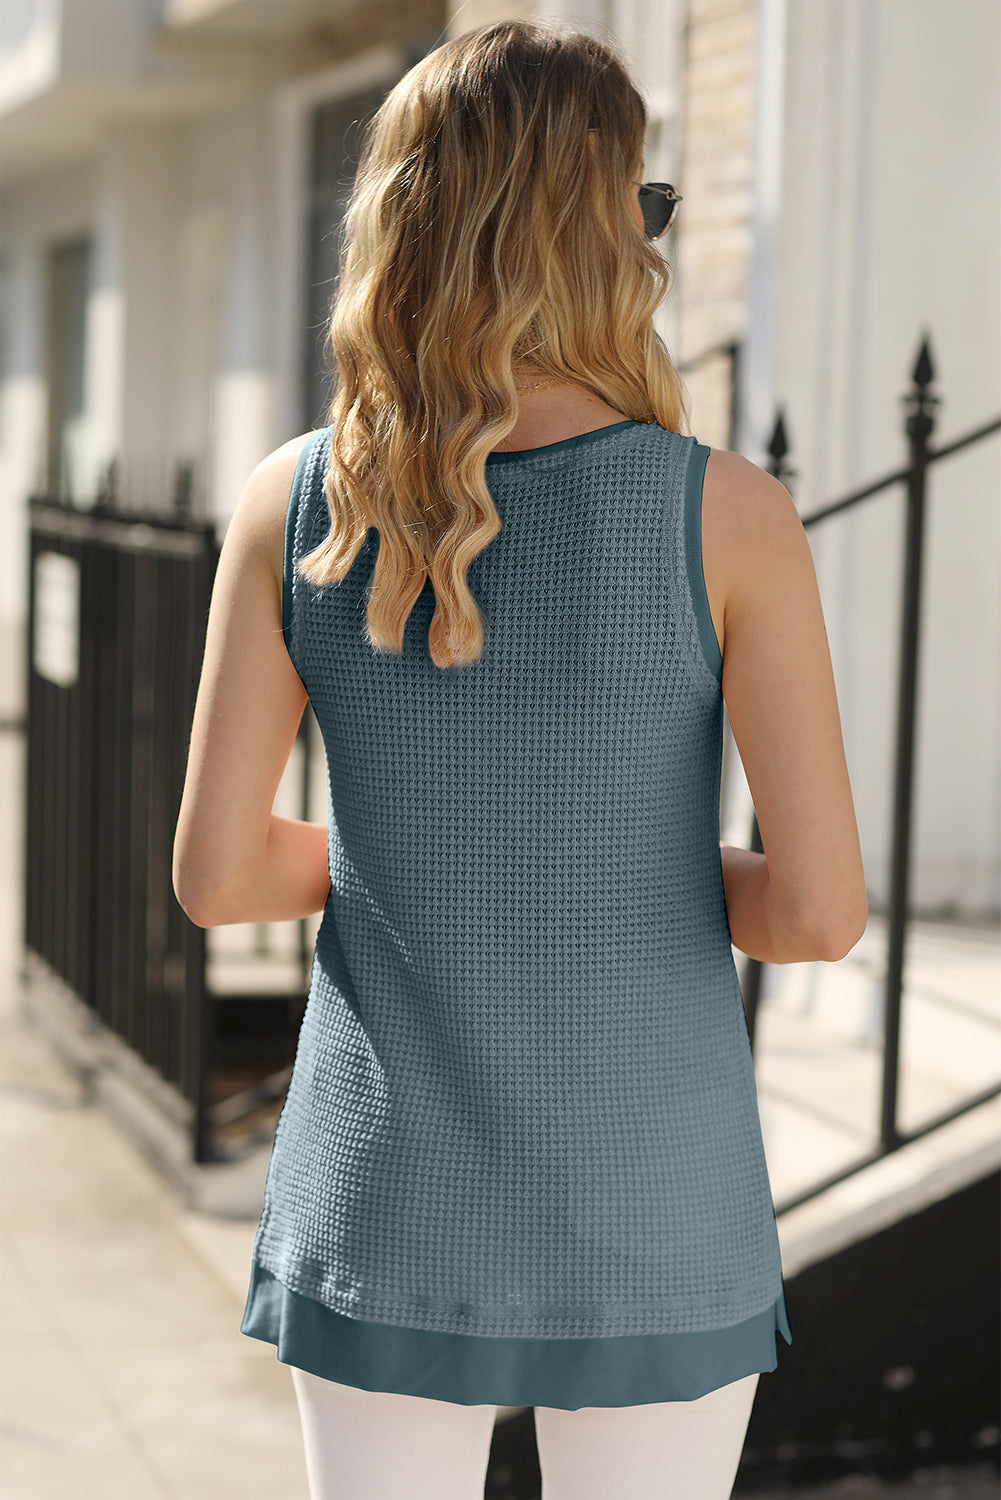 Real Teal Scoop Neck Waffle Knit Flowy Vest Pre Order Tops JT's Designer Fashion